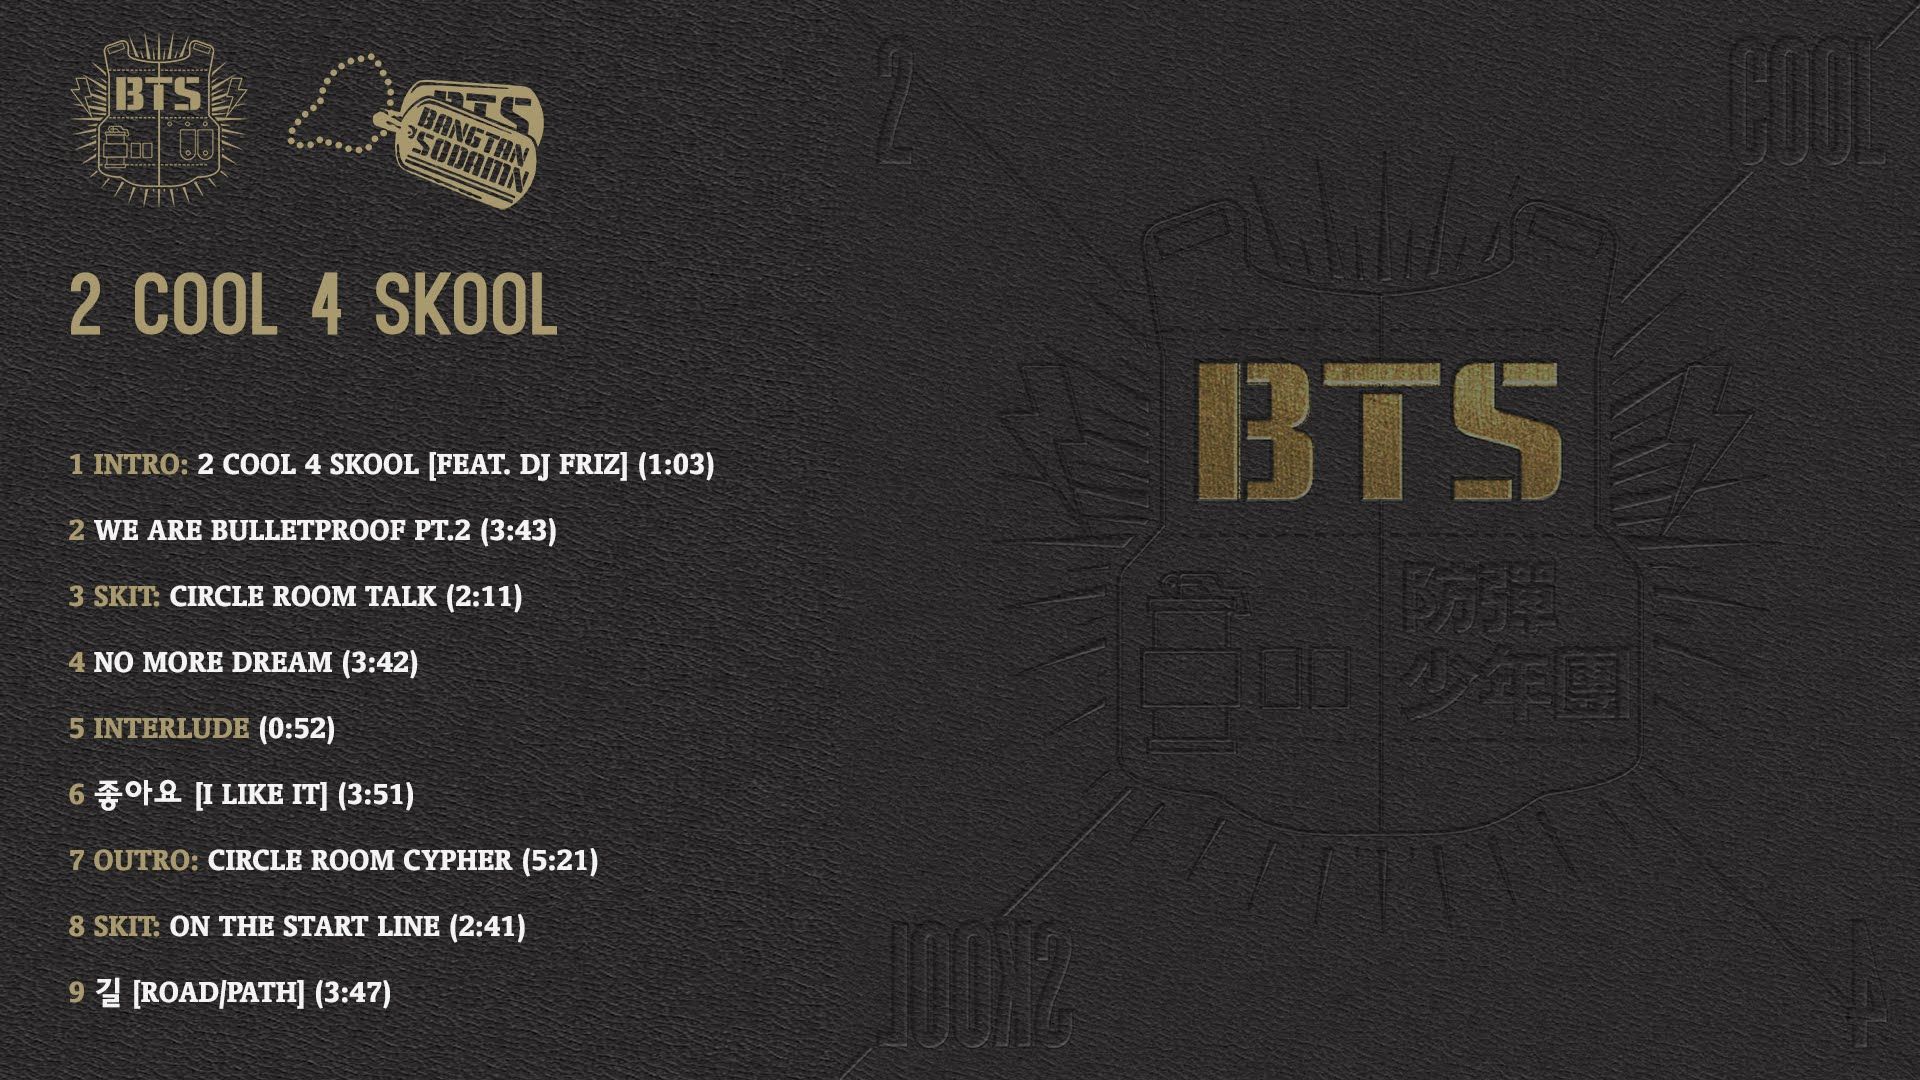 Альбом песен бтс. BTS 2 cool 4 Skool альбом. BTS 2 cool 4 Skool альбом обложка. Дебютный альбом БТС 2 cool 4 School. BTS 2 cool 4 School обложка.